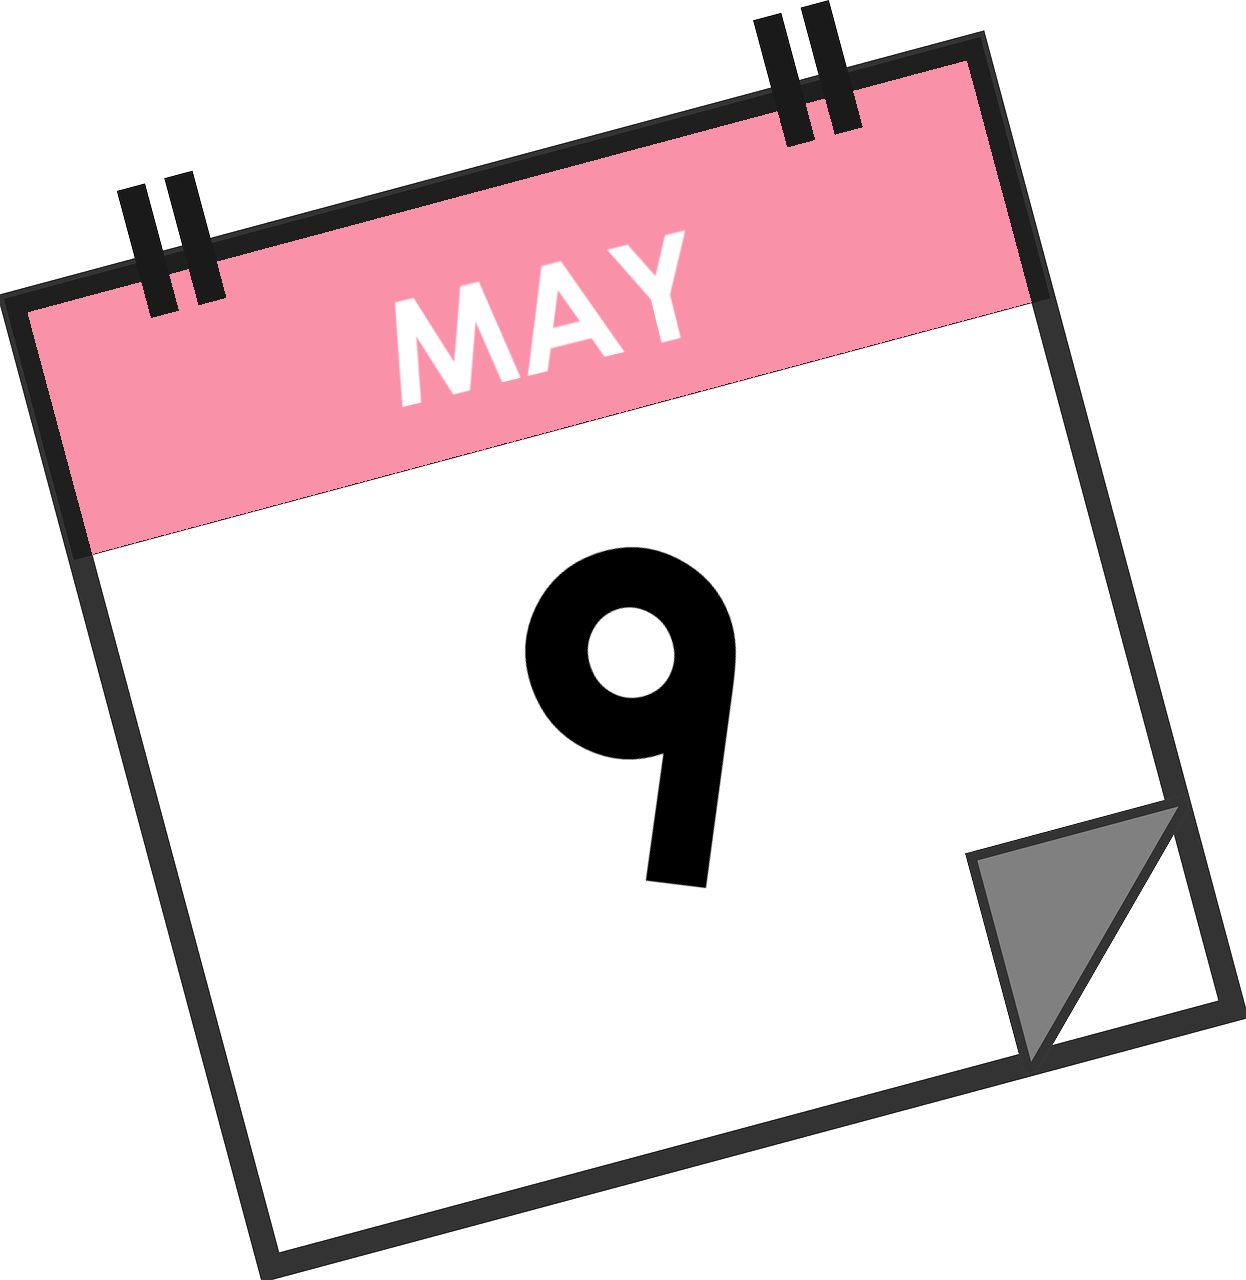 may clipart may calendar